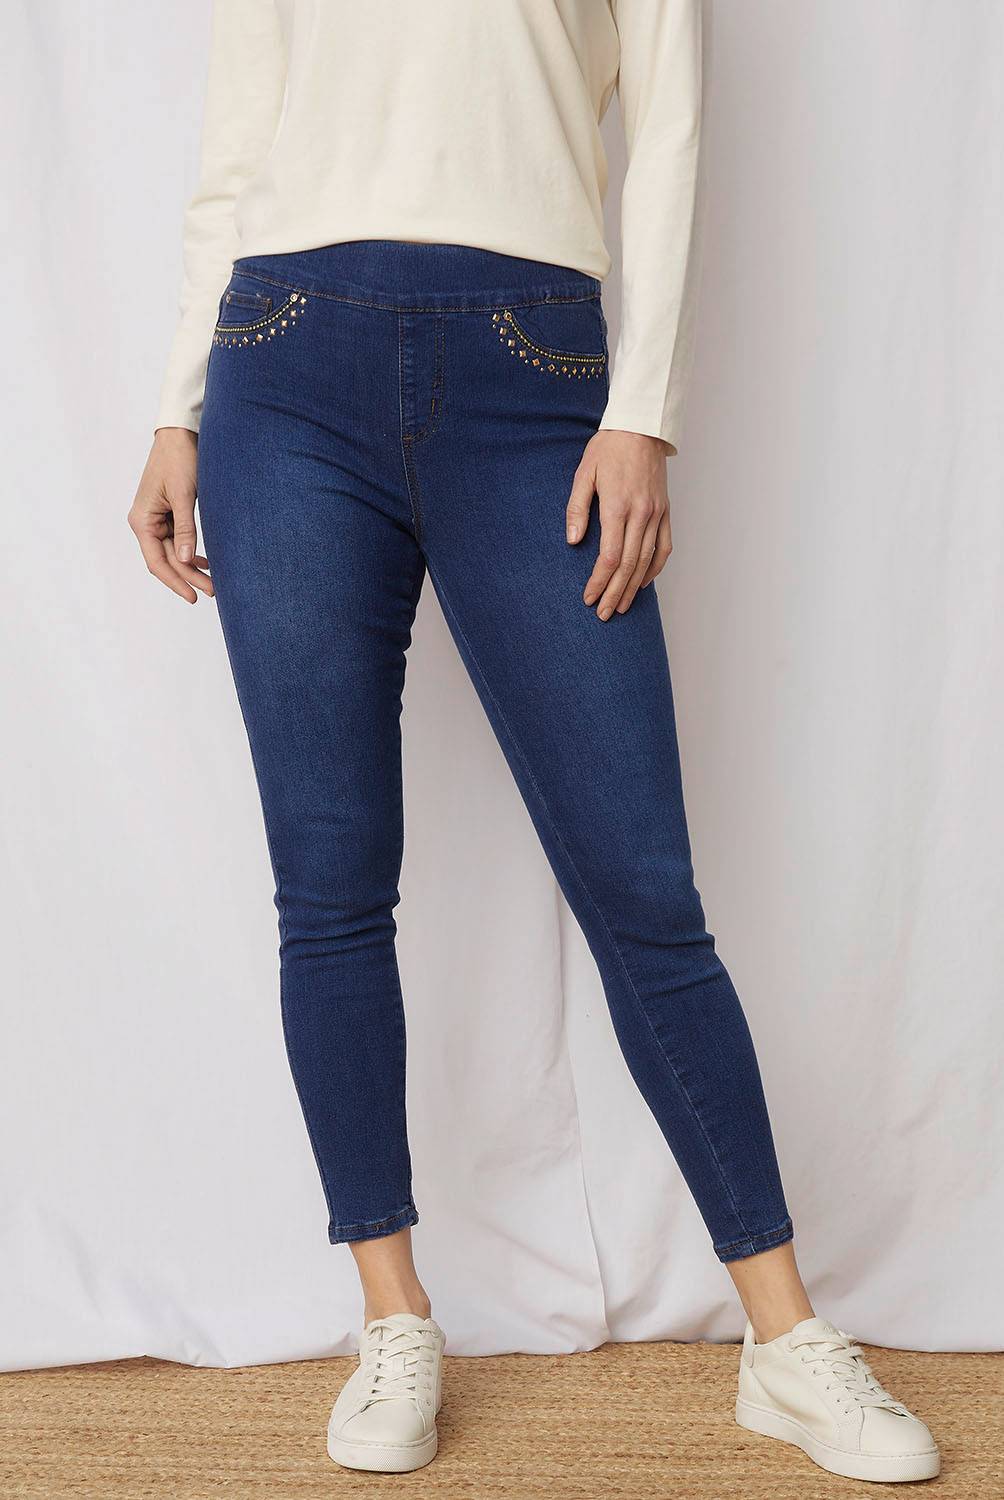 STEFANO COCCI - Jeans Skinny Tiro Alto Mujer S.Cocci